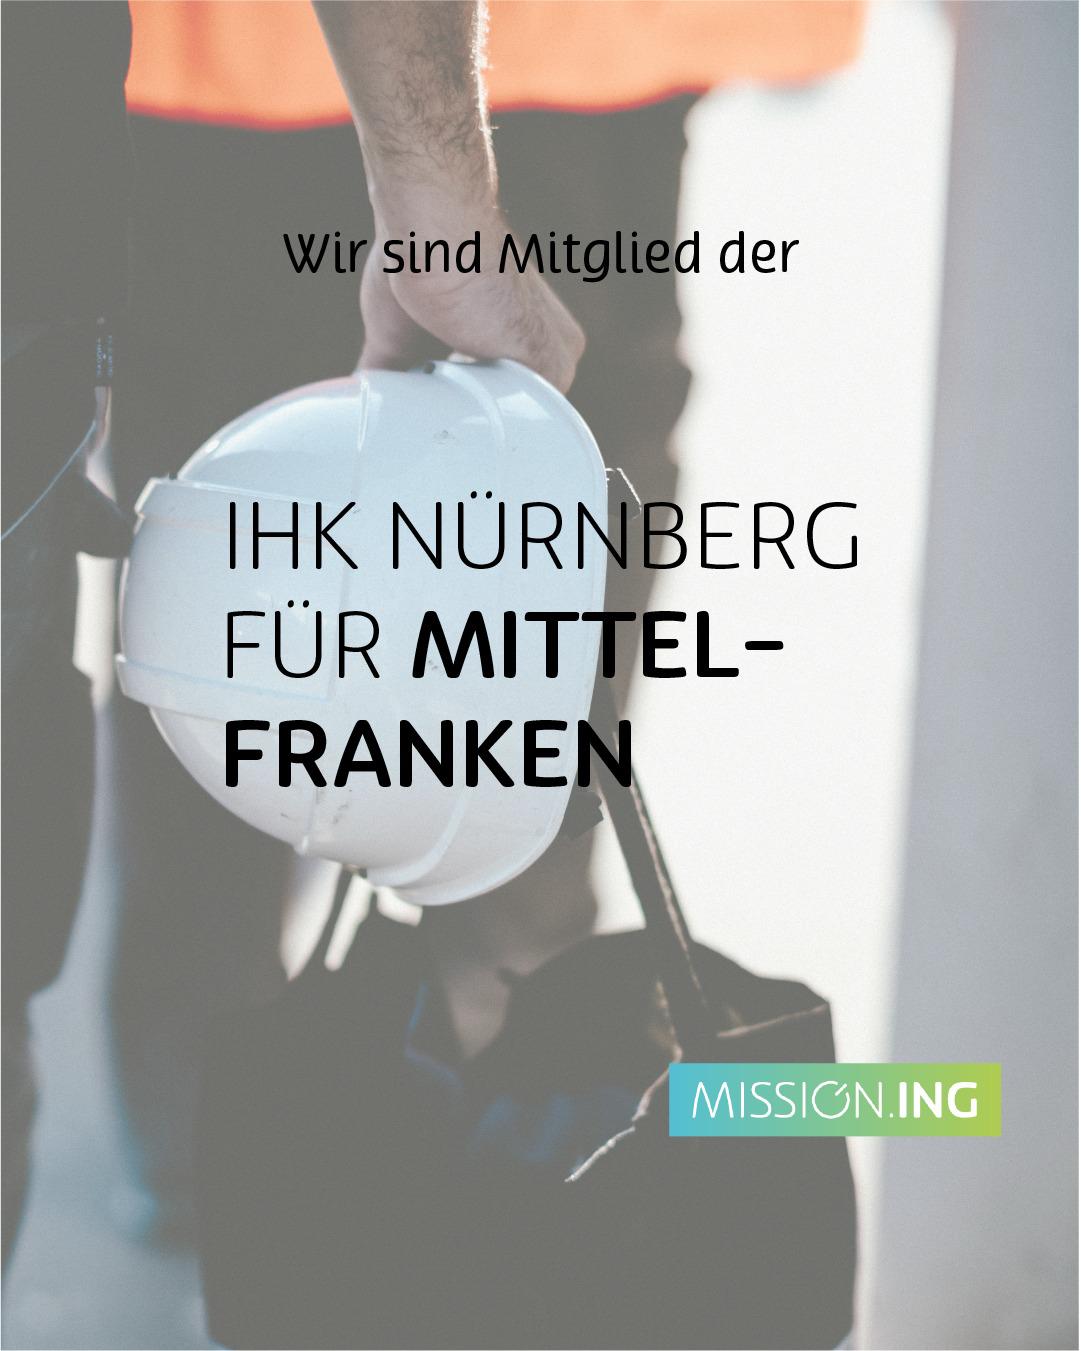 Bilder MISSION.ING GmbH